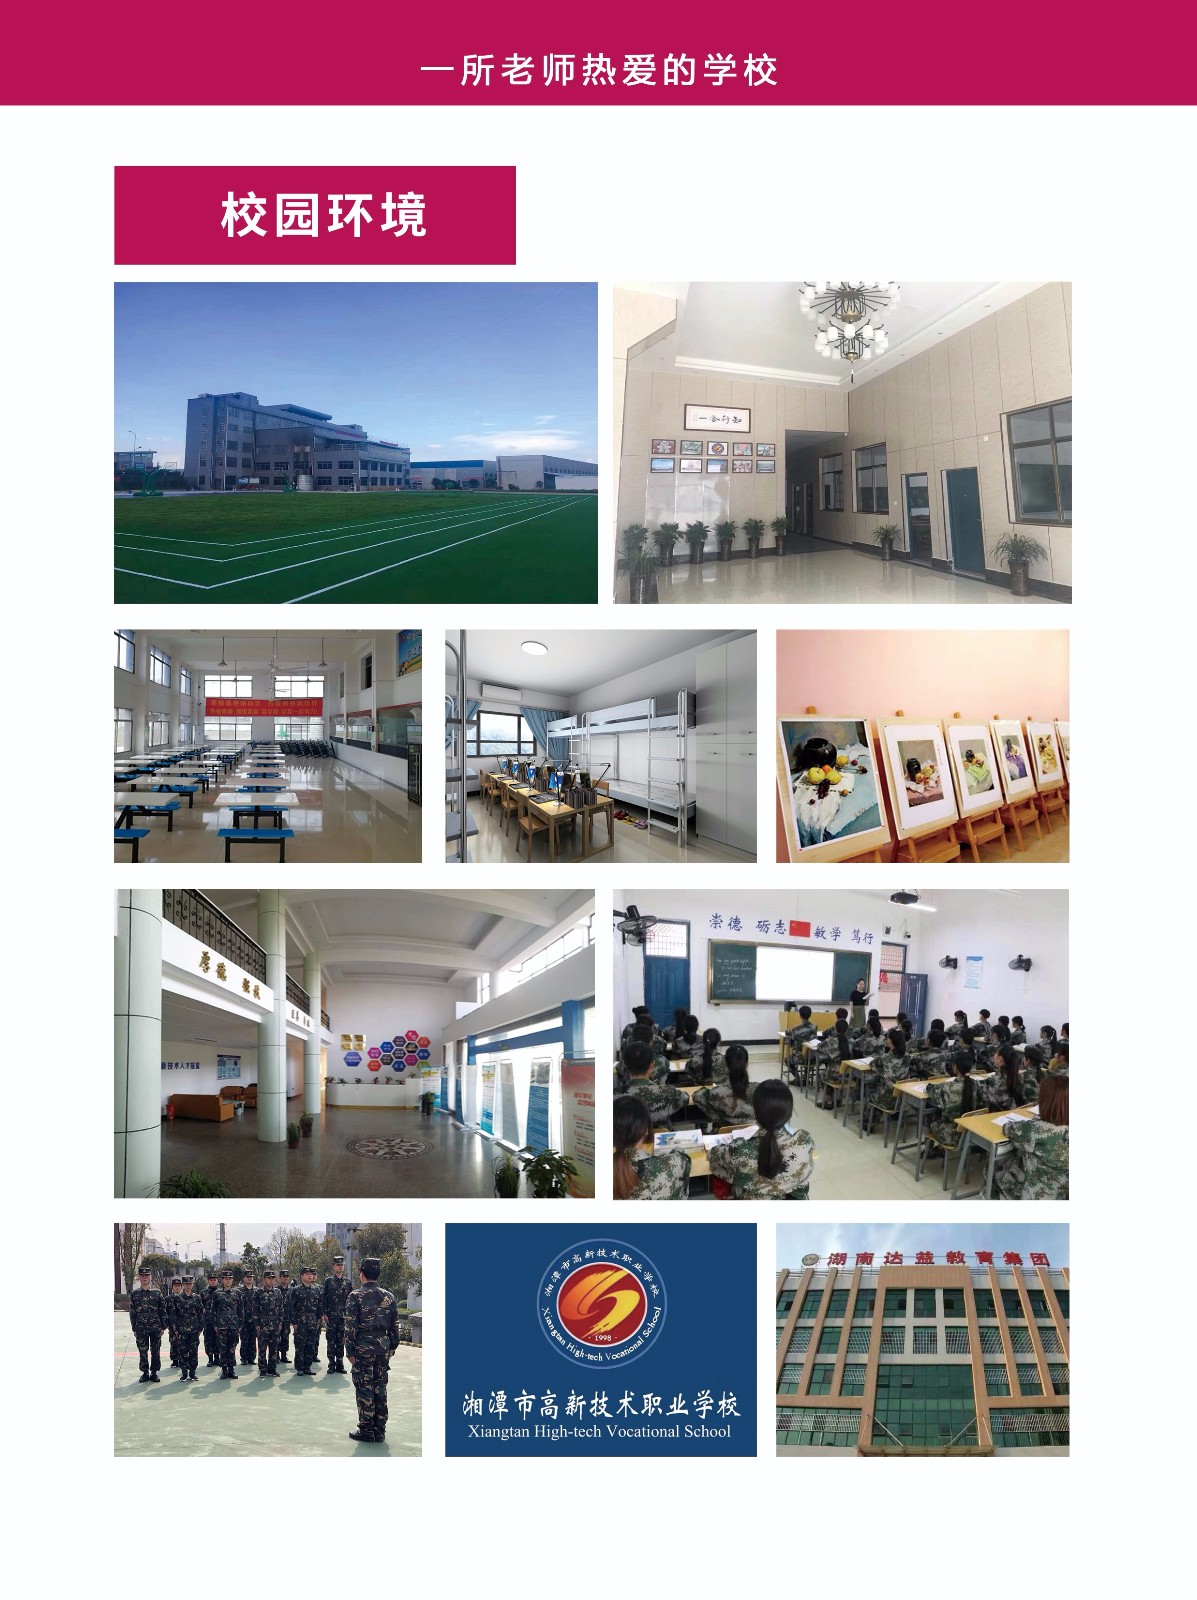  湘潭市高新技术职业学校 